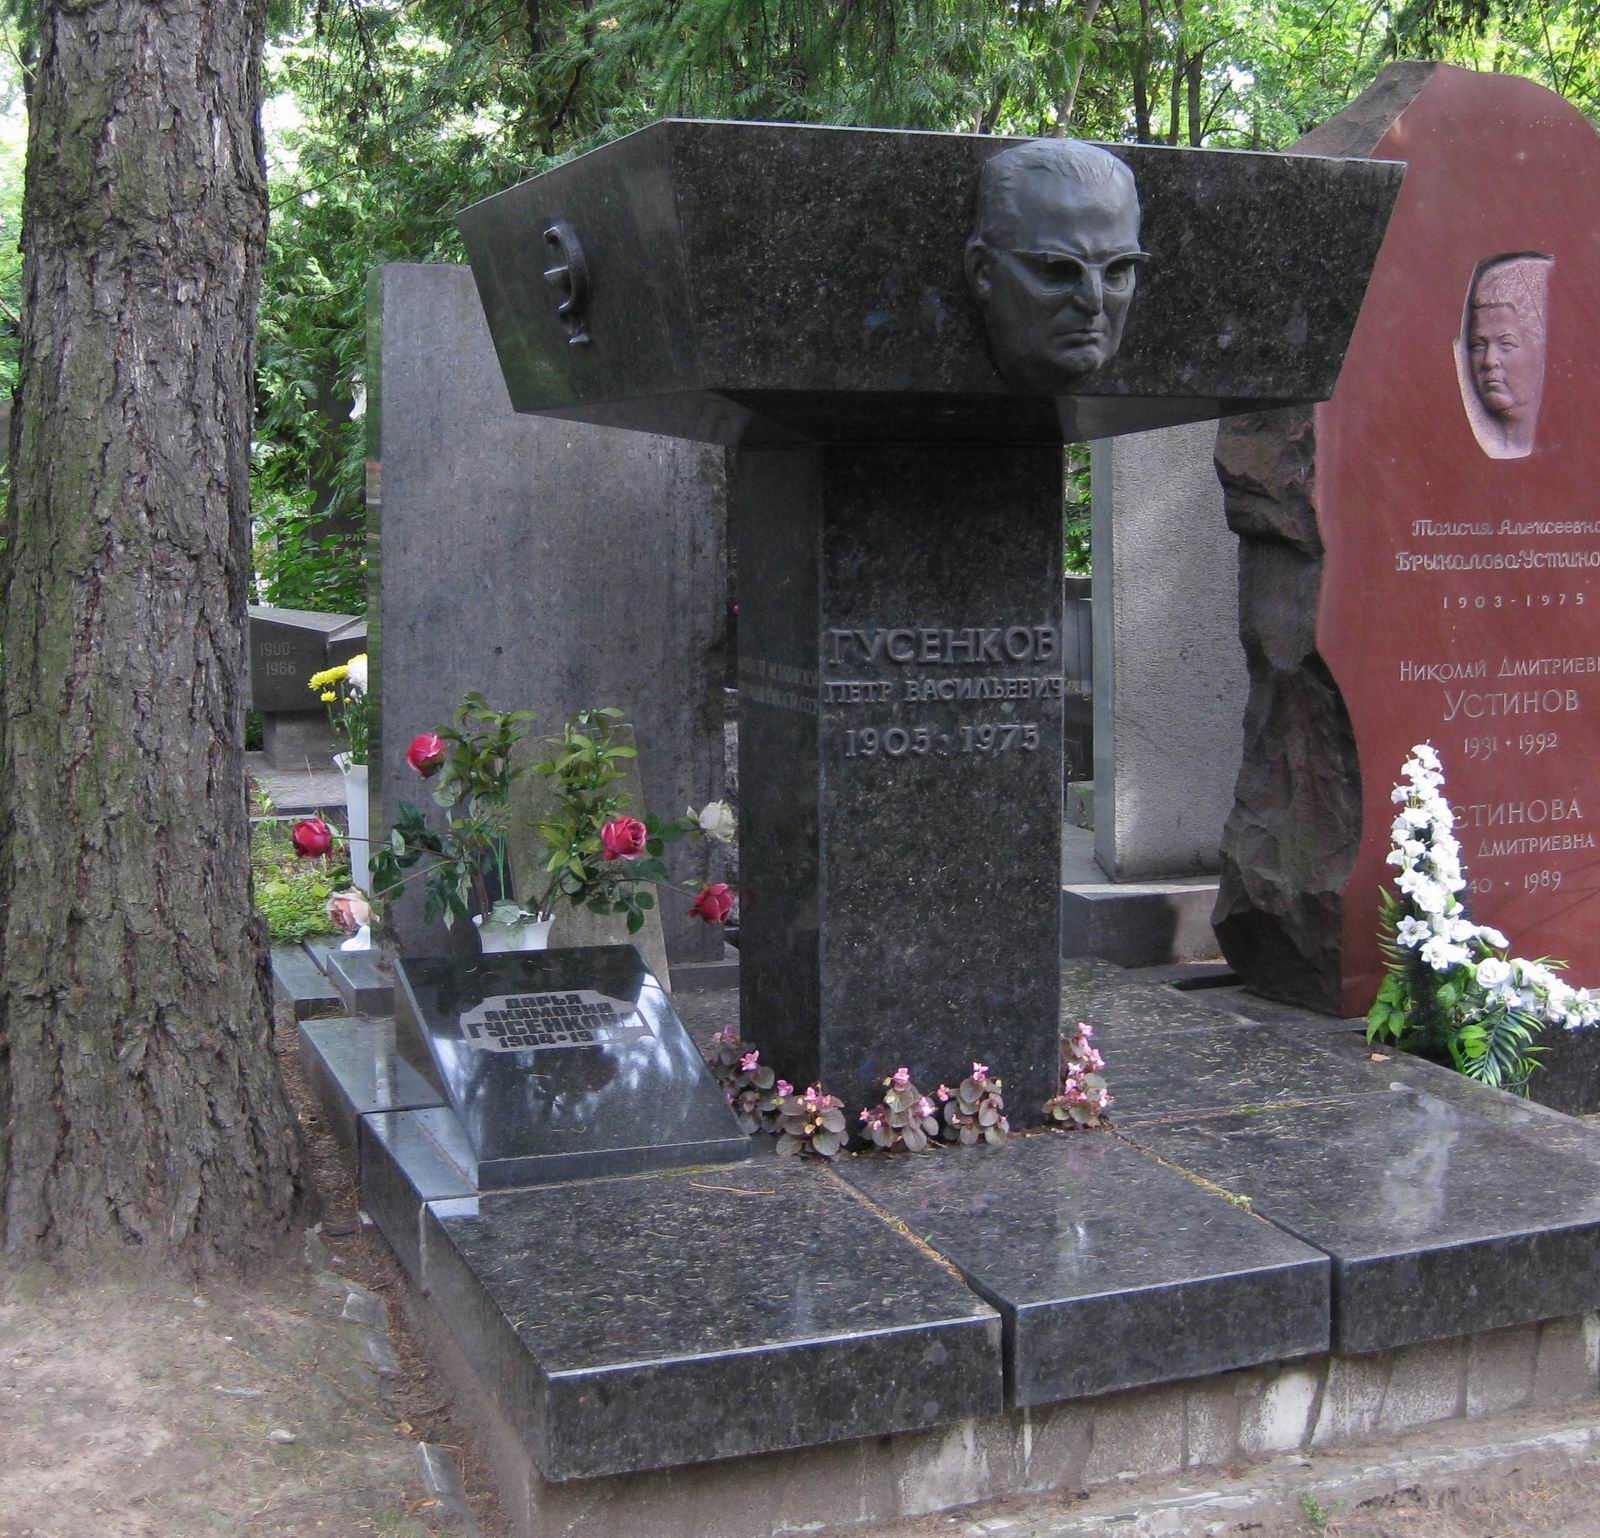 Памятник на могиле Гусенкова П.В. (1905-1975), ск. Г.Распопов, арх. Ю.Соколов, на Новодевичьем кладбище (6-28-8).